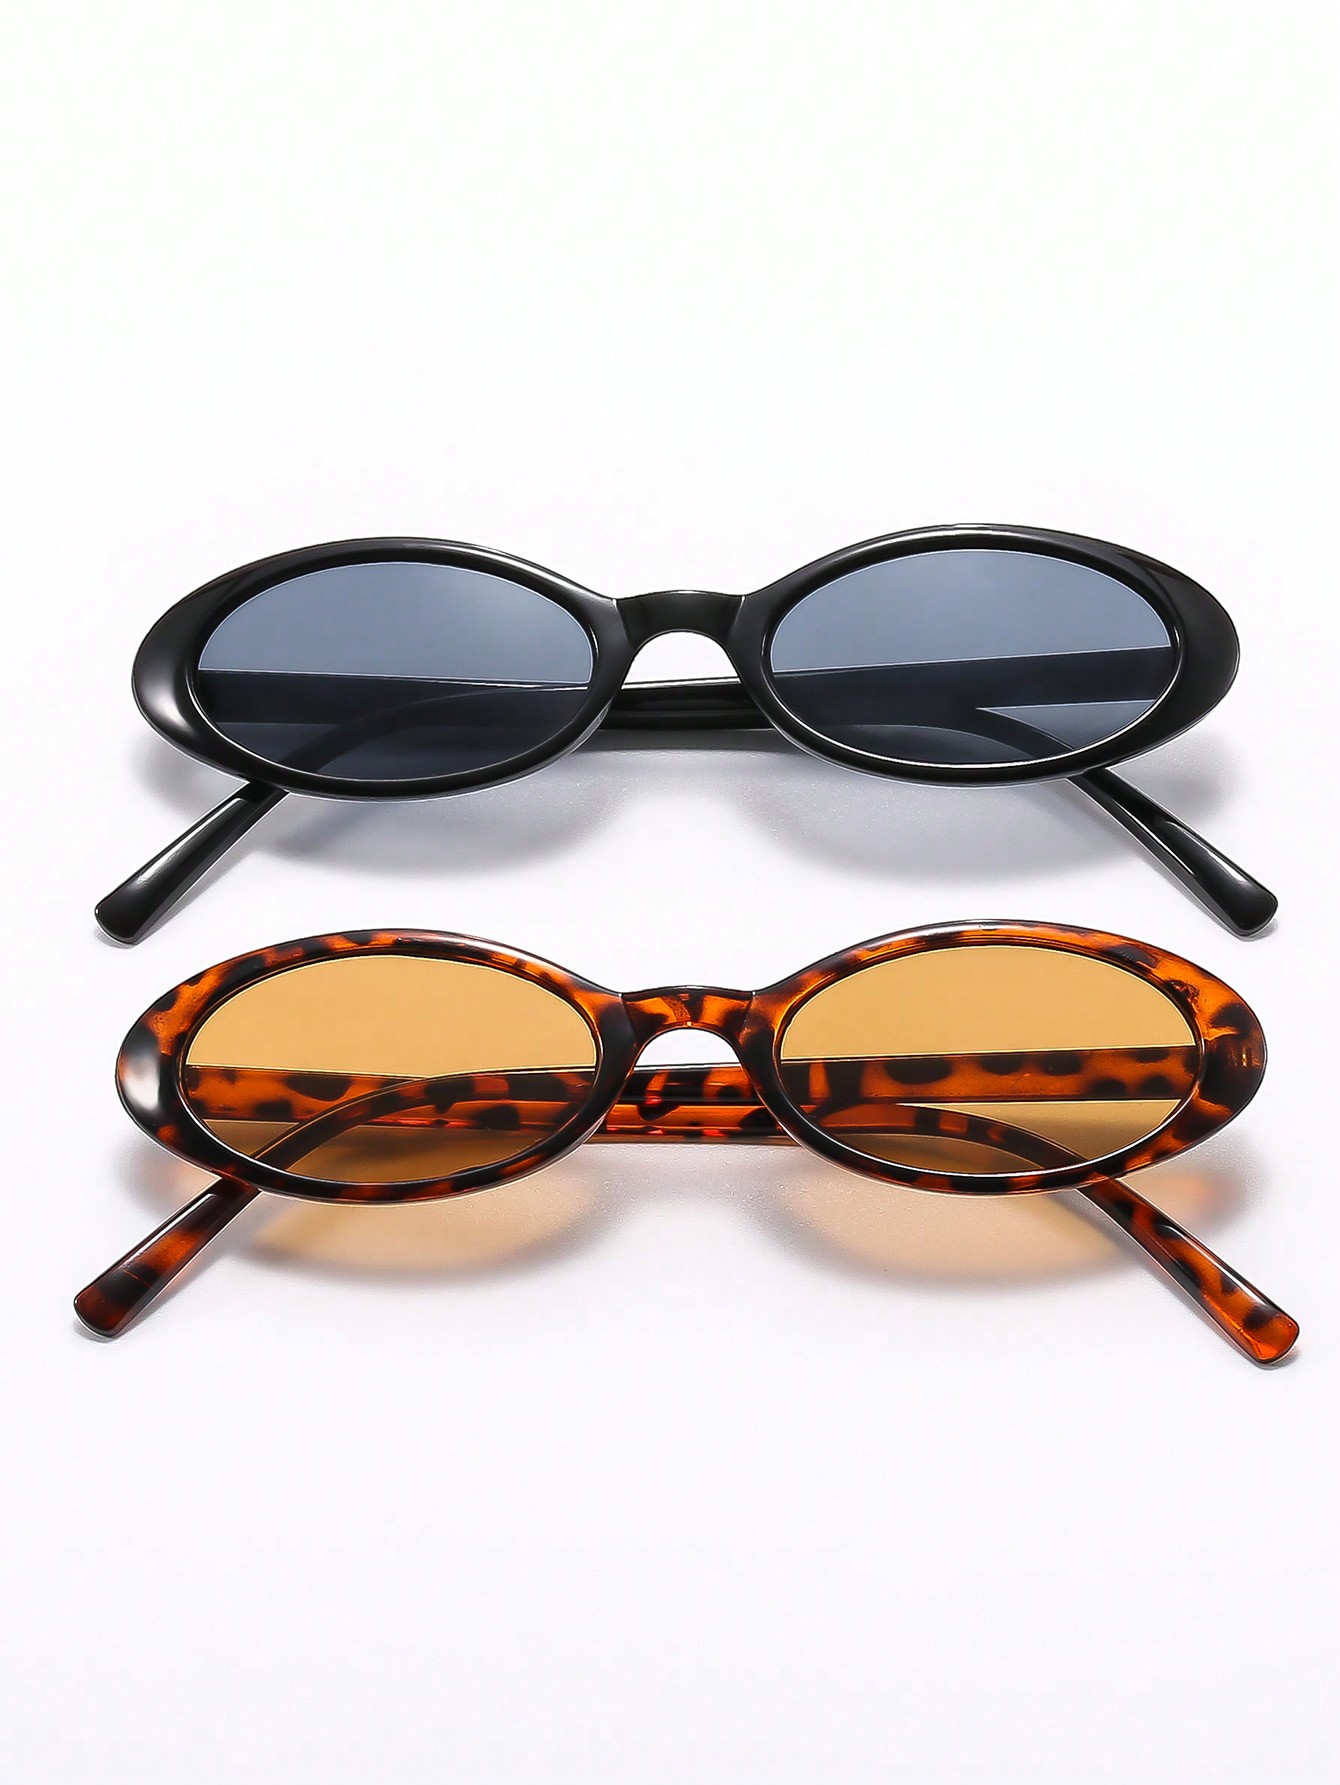 2шт овальные солнцезащитные очки в винтажном стиле для улицы с защитой от ультрафиолета 400 для женщин 50 шт бумажные украшения в винтажном стиле